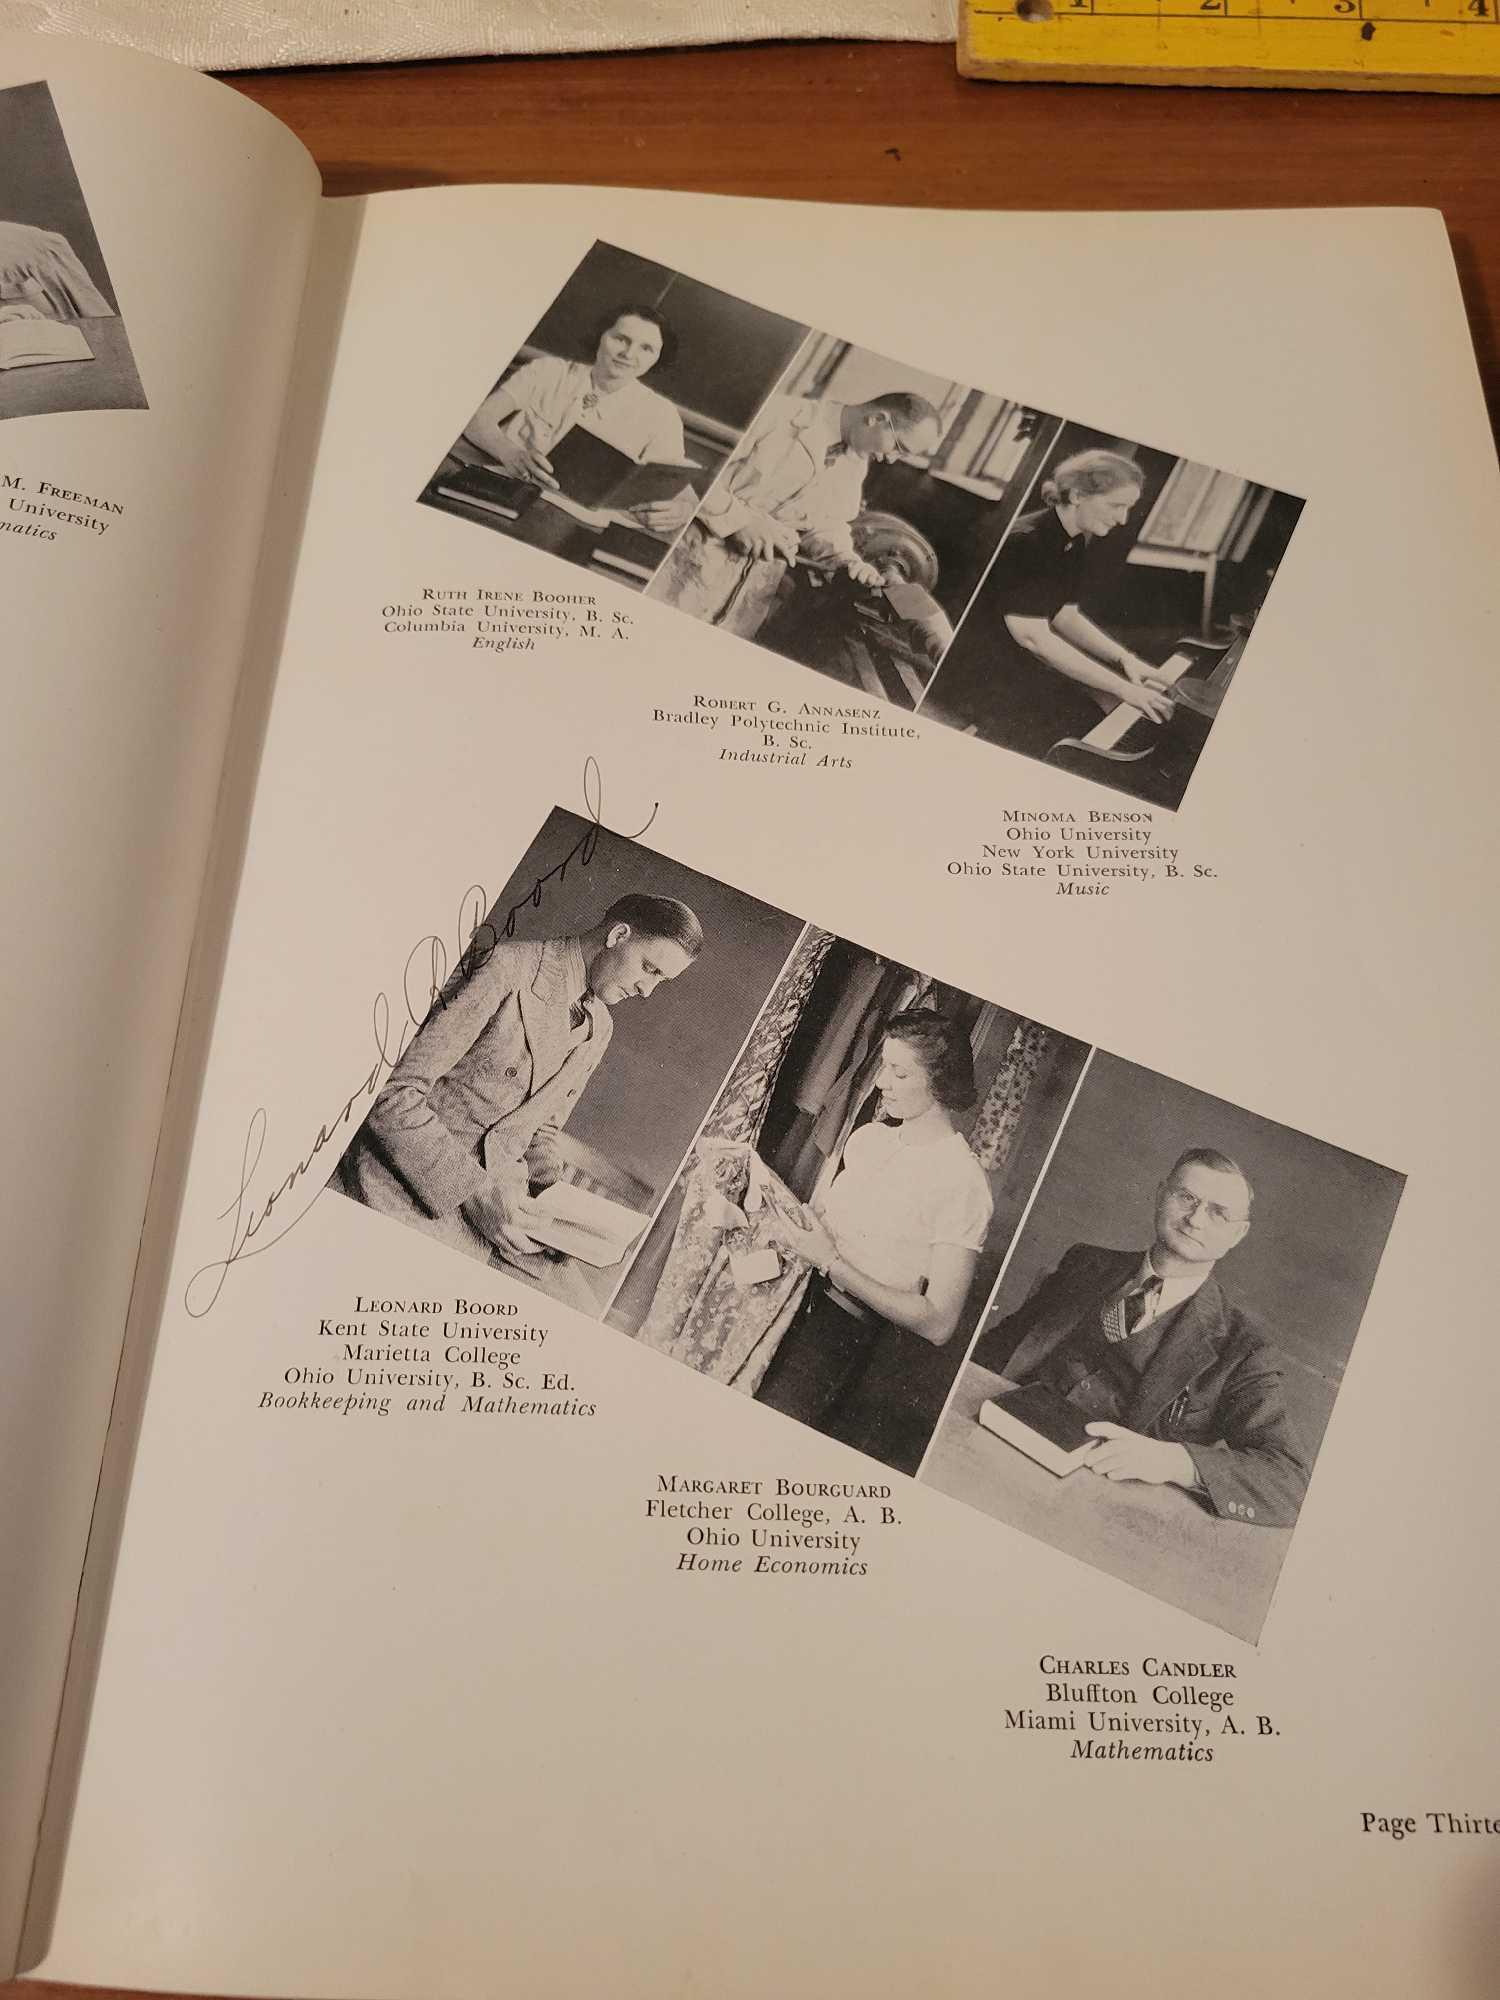 Vintage School Yearbooks (3)